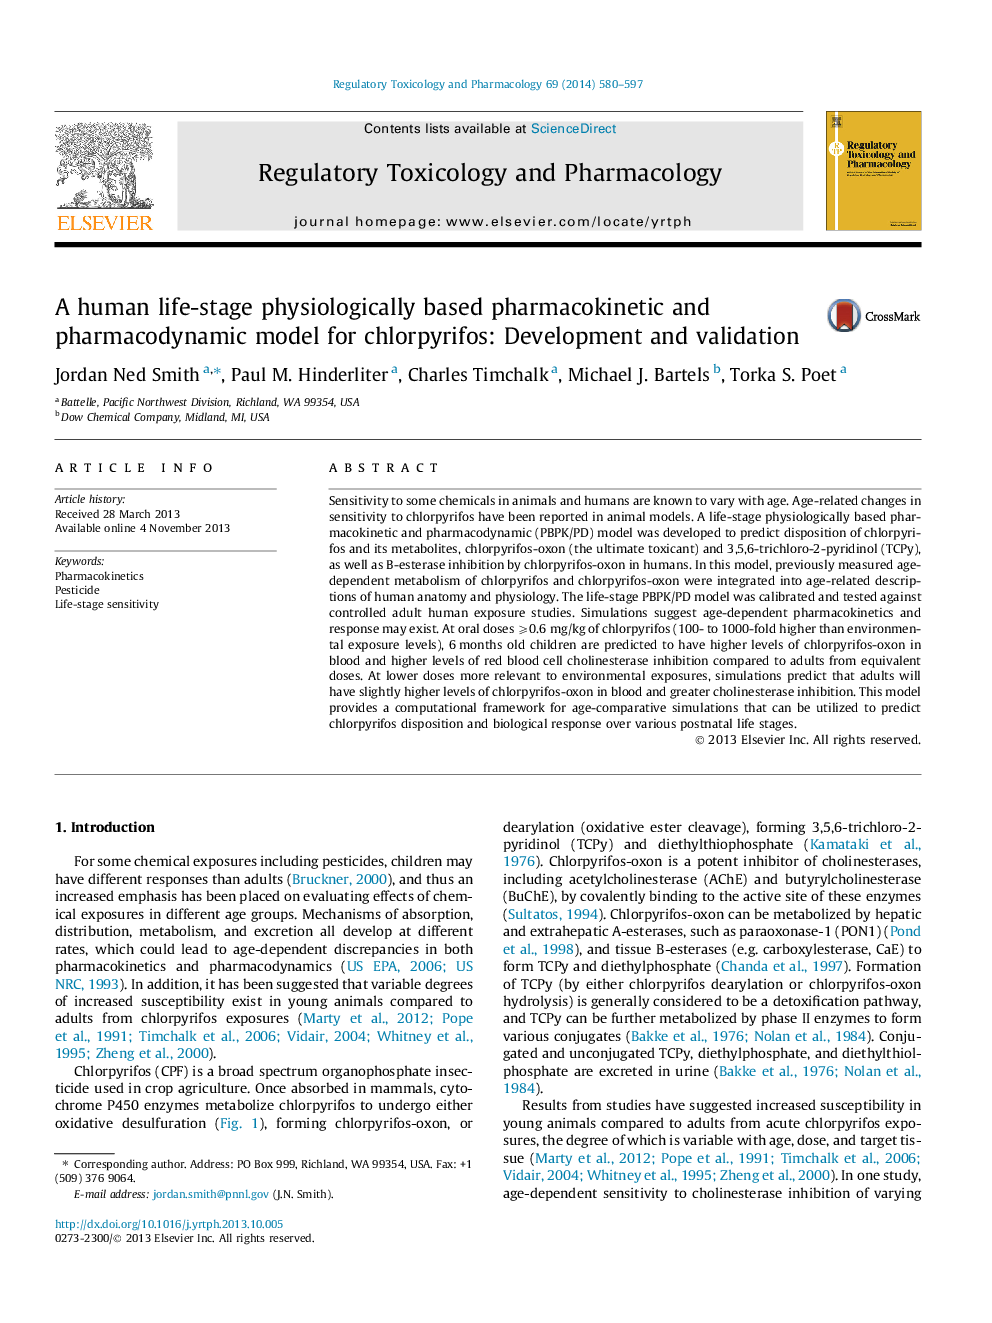 یک مدل فارماکوکینتیک و فارماکودینامیک مبتنی بر فیزیولوژیک مبتنی بر انسان برای کلروفیفیف: توسعه و اعتبار سنجی 